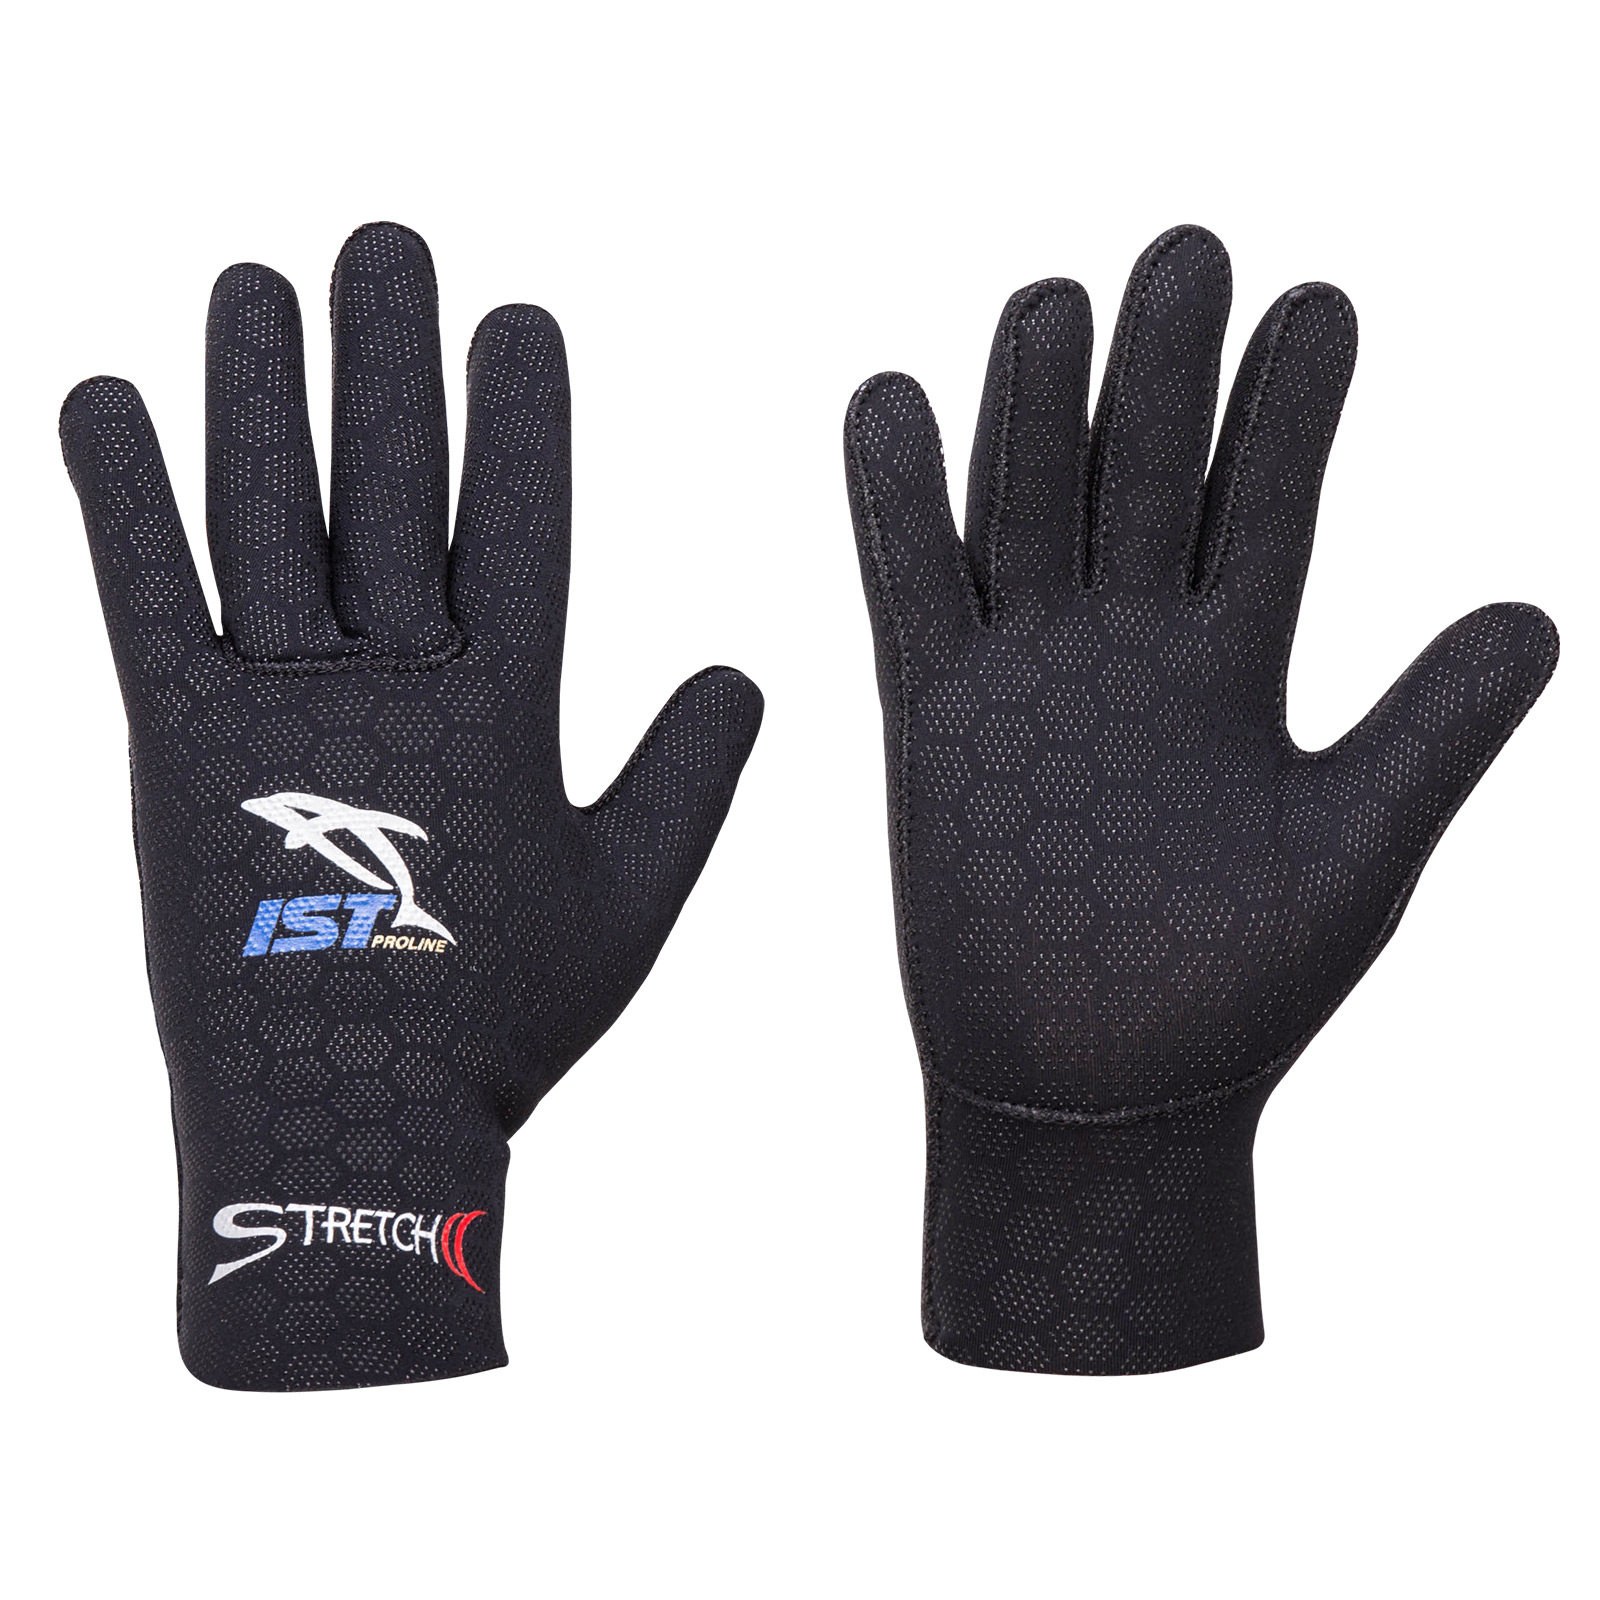 2.5mm Super Stretch Gloves